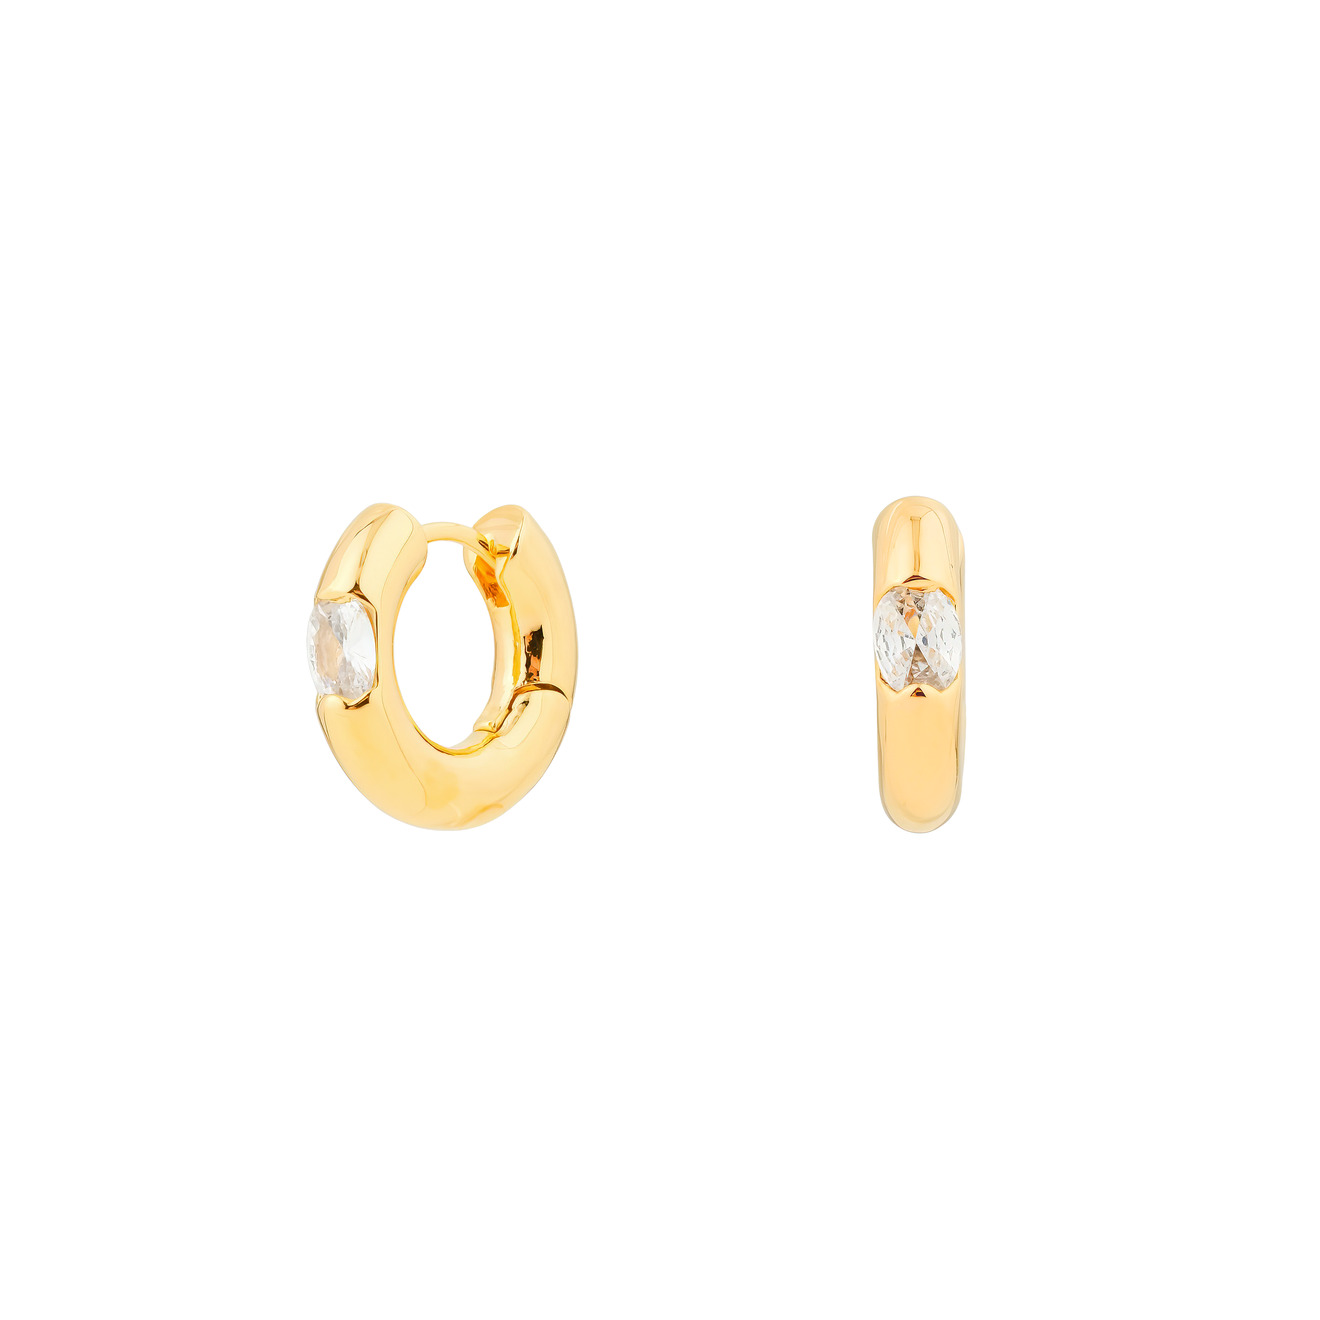 Herald Percy Золотистые дутые серьги-кольца с овальными кристаллами herald percy двойные золотистые серьги с белыми кристаллами